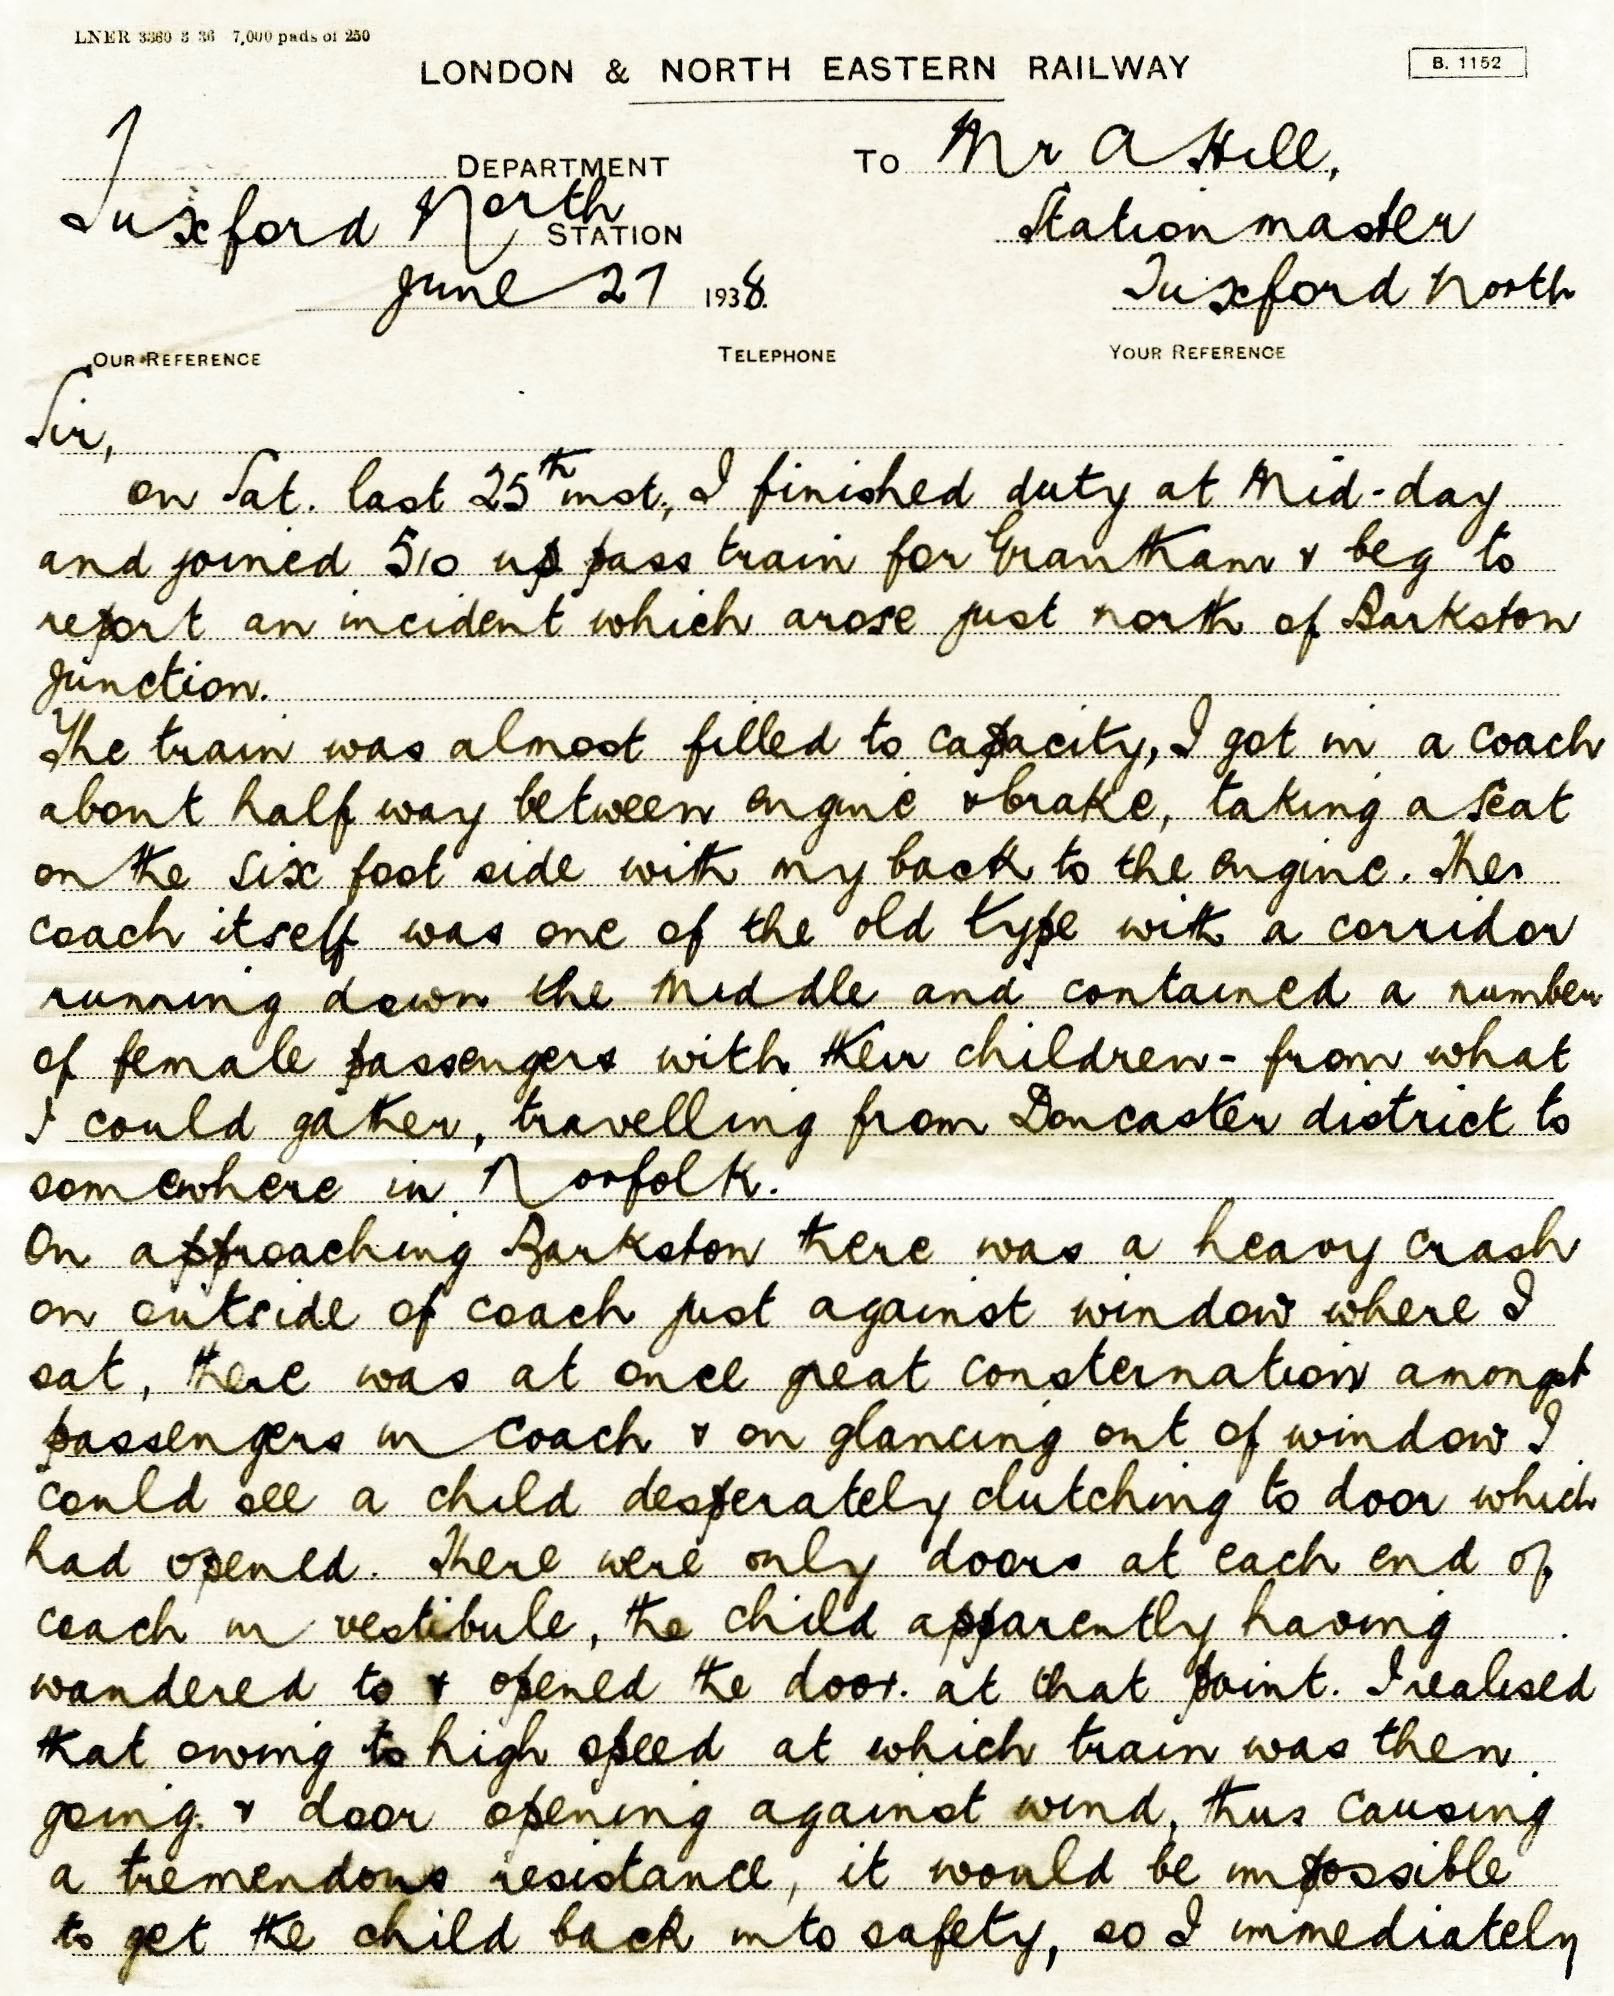 letter-written-by-herbert-meade-1938-06-27-page-1-adj